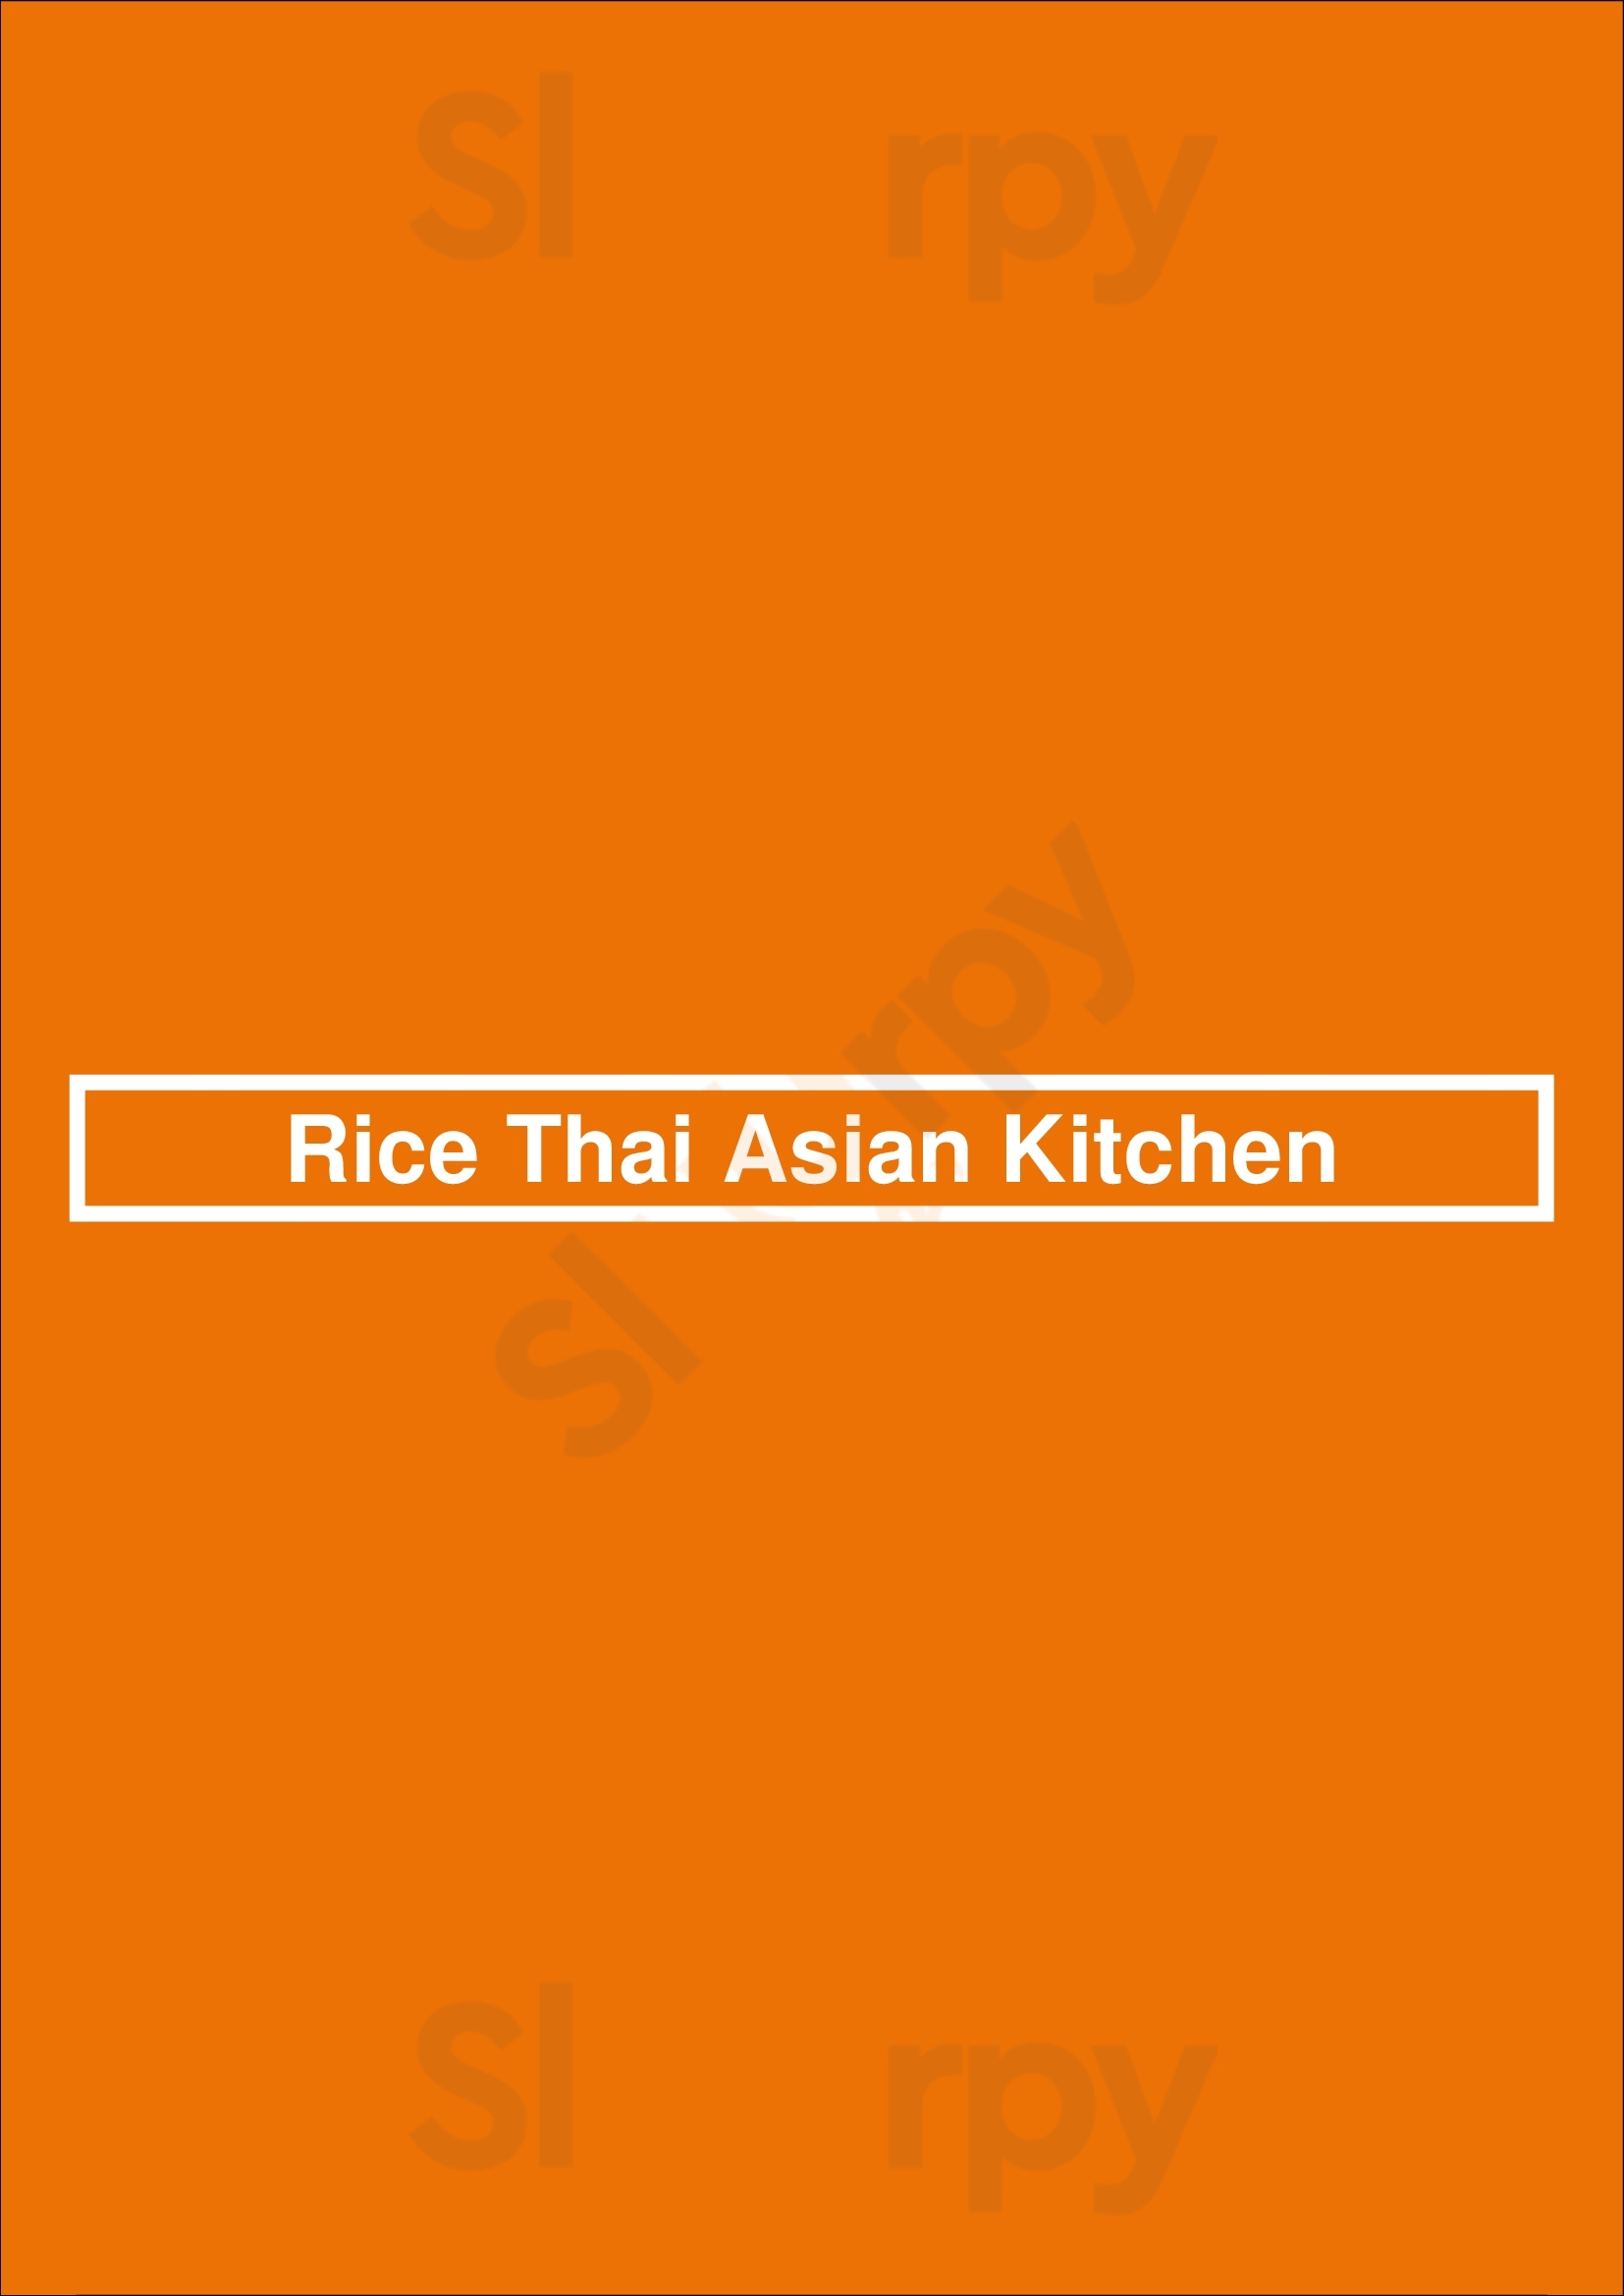 Rice Thai Asian Kitchen Chicago Menu - 1